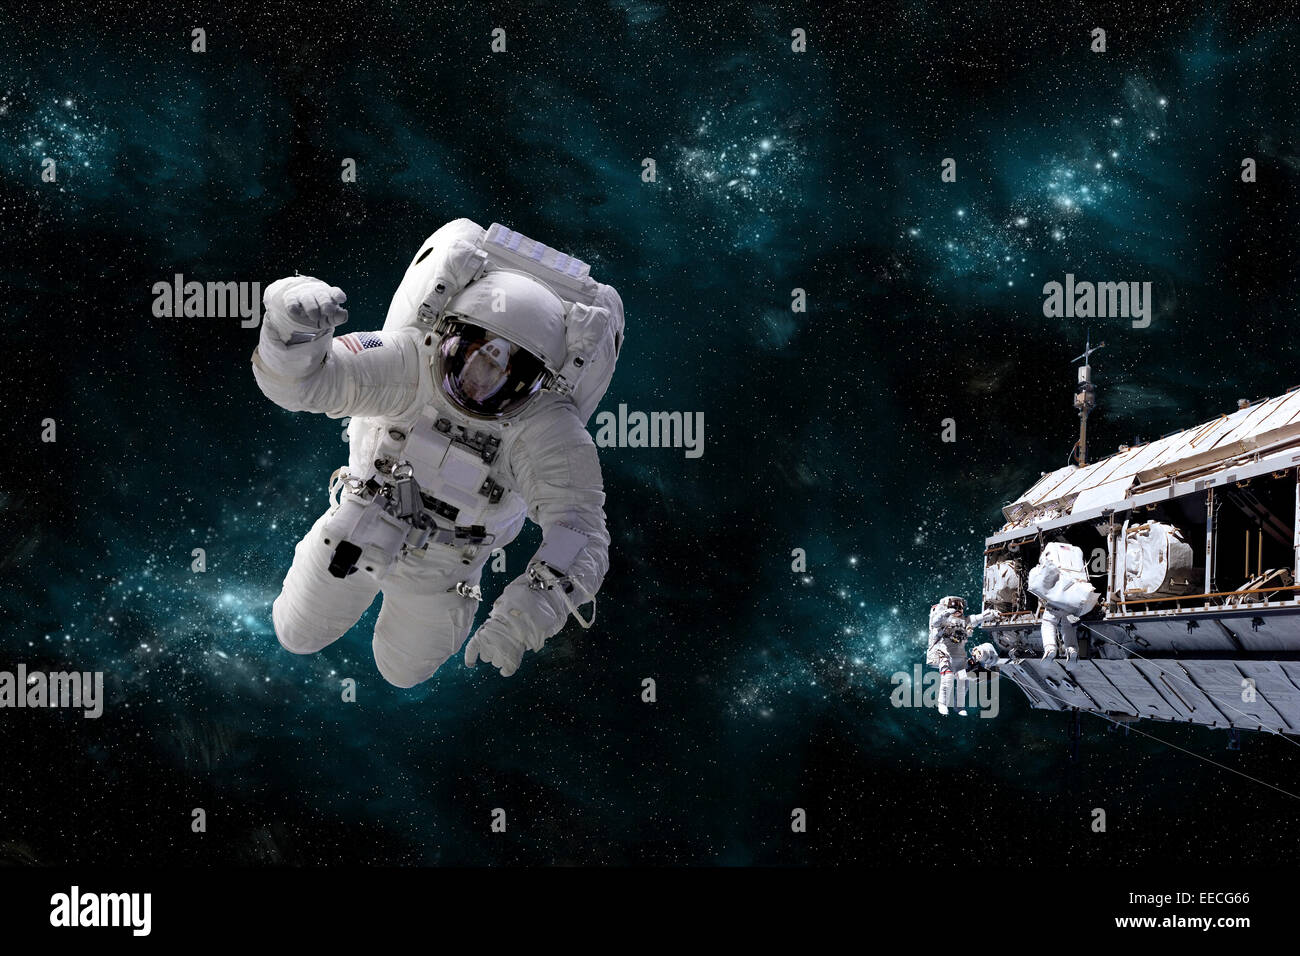 Concept de l'artiste de l'astronaute flottant dans l'espace tandis que ses compagnons de travail des astronautes sur la station spatiale. Une scène galactique se Banque D'Images